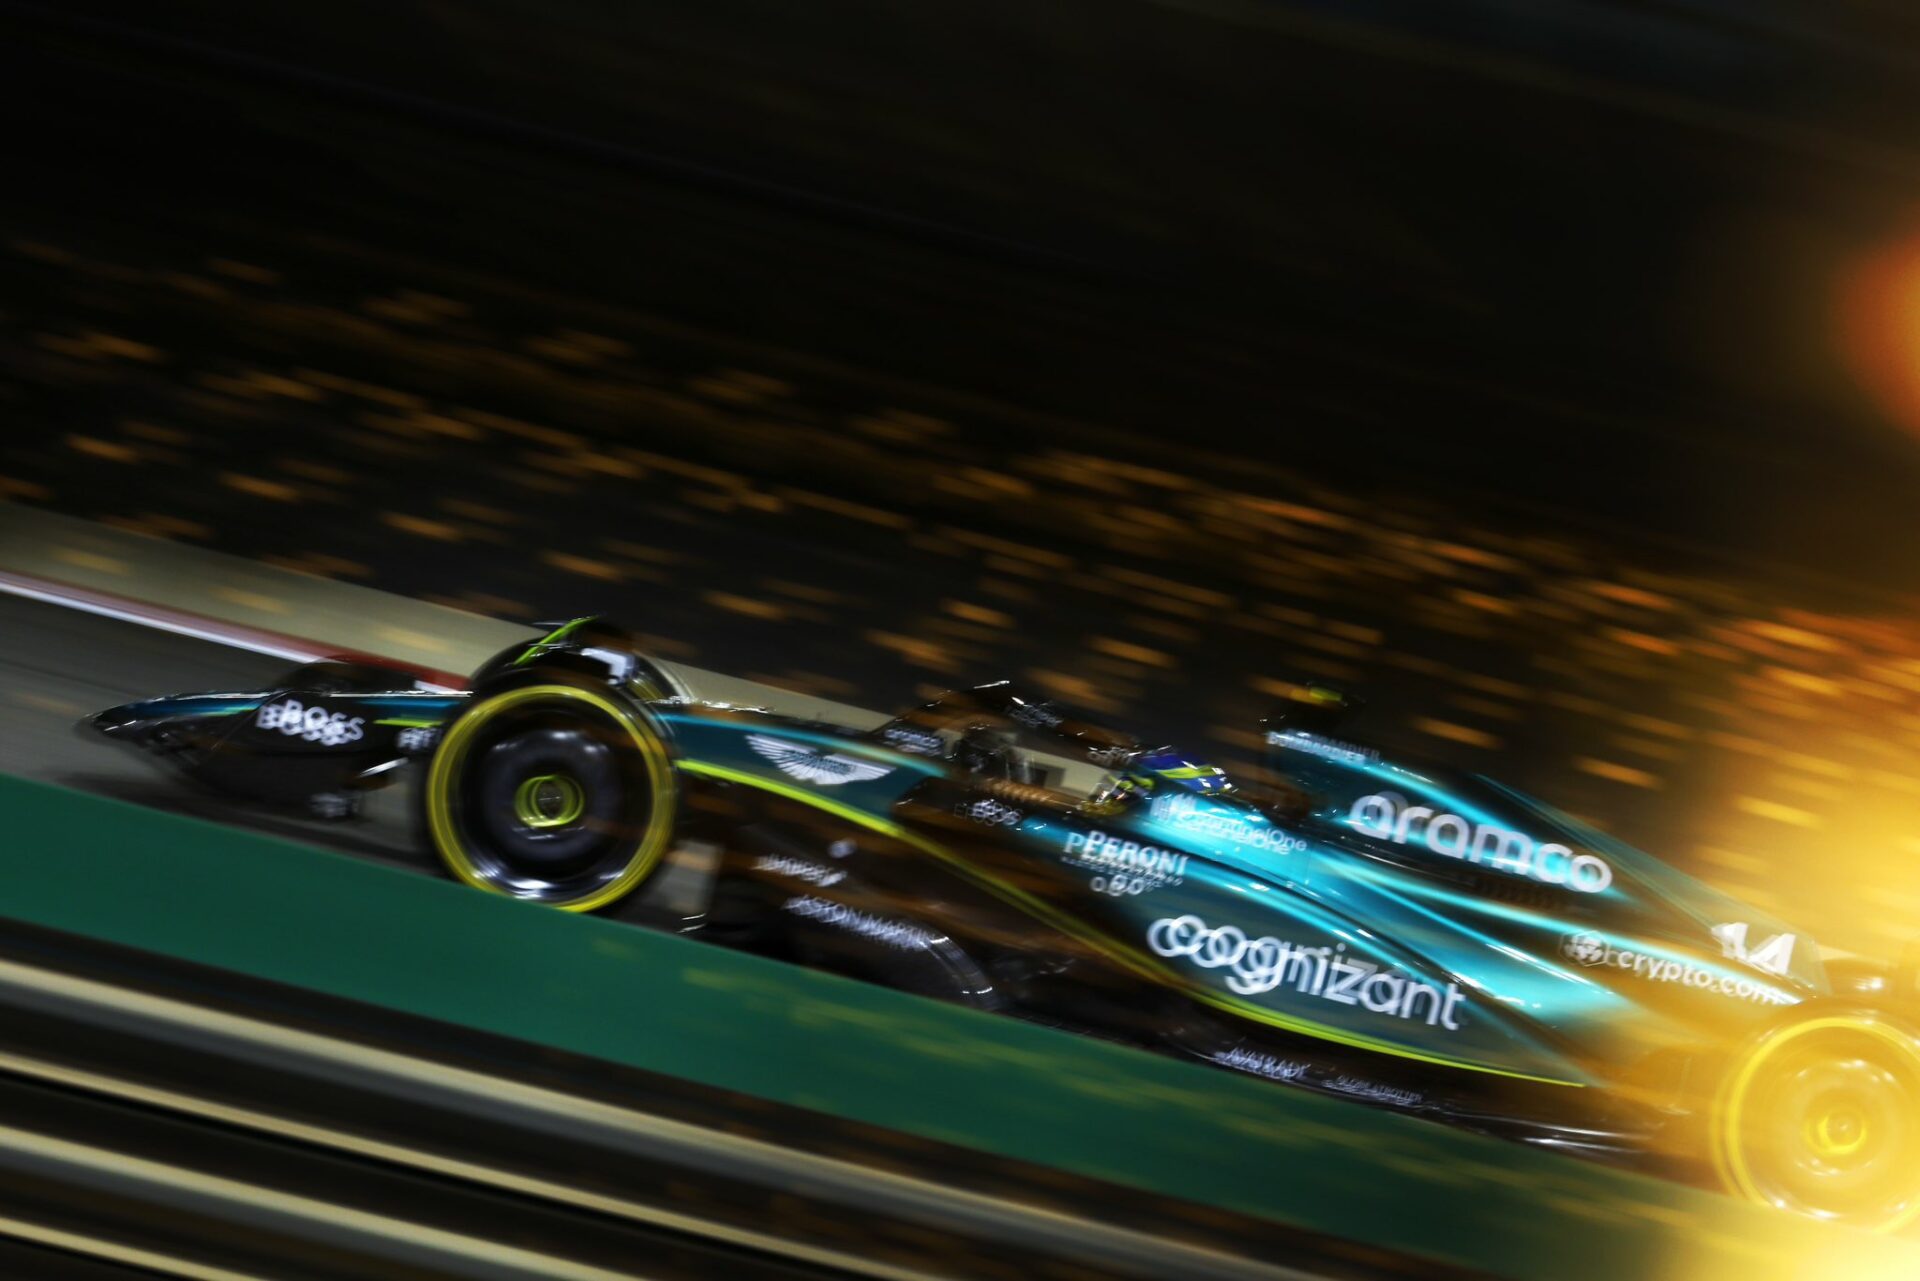 GP de Bahreïn de F1- Charles Leclerc : “le meilleur résultat qu'on